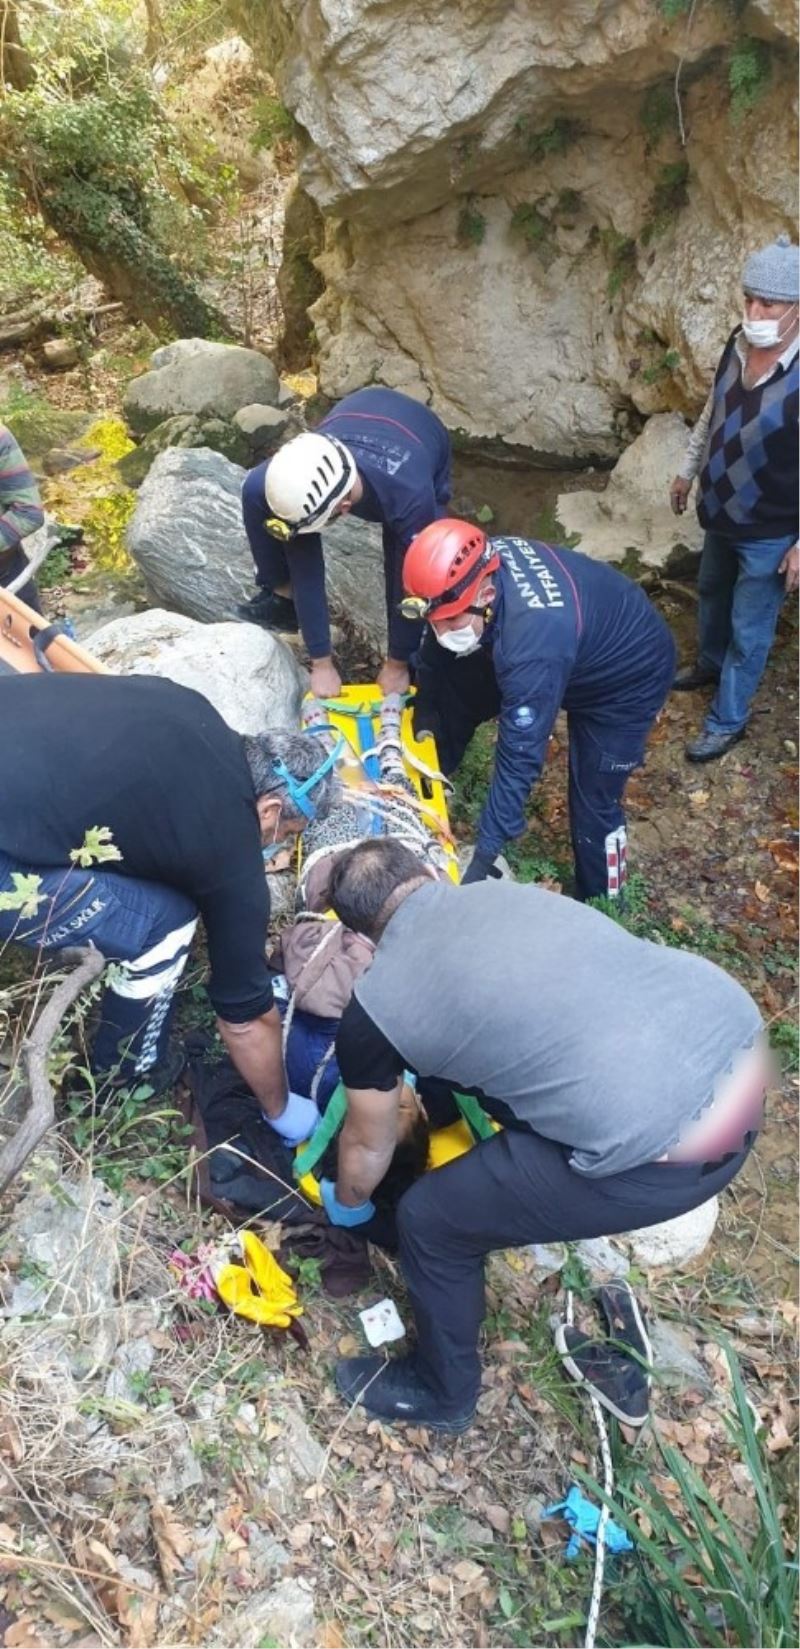 Defne keserken 30 metrelik uçuruma yuvarlanan kadın itfaiye tarafından kurtarıldı
